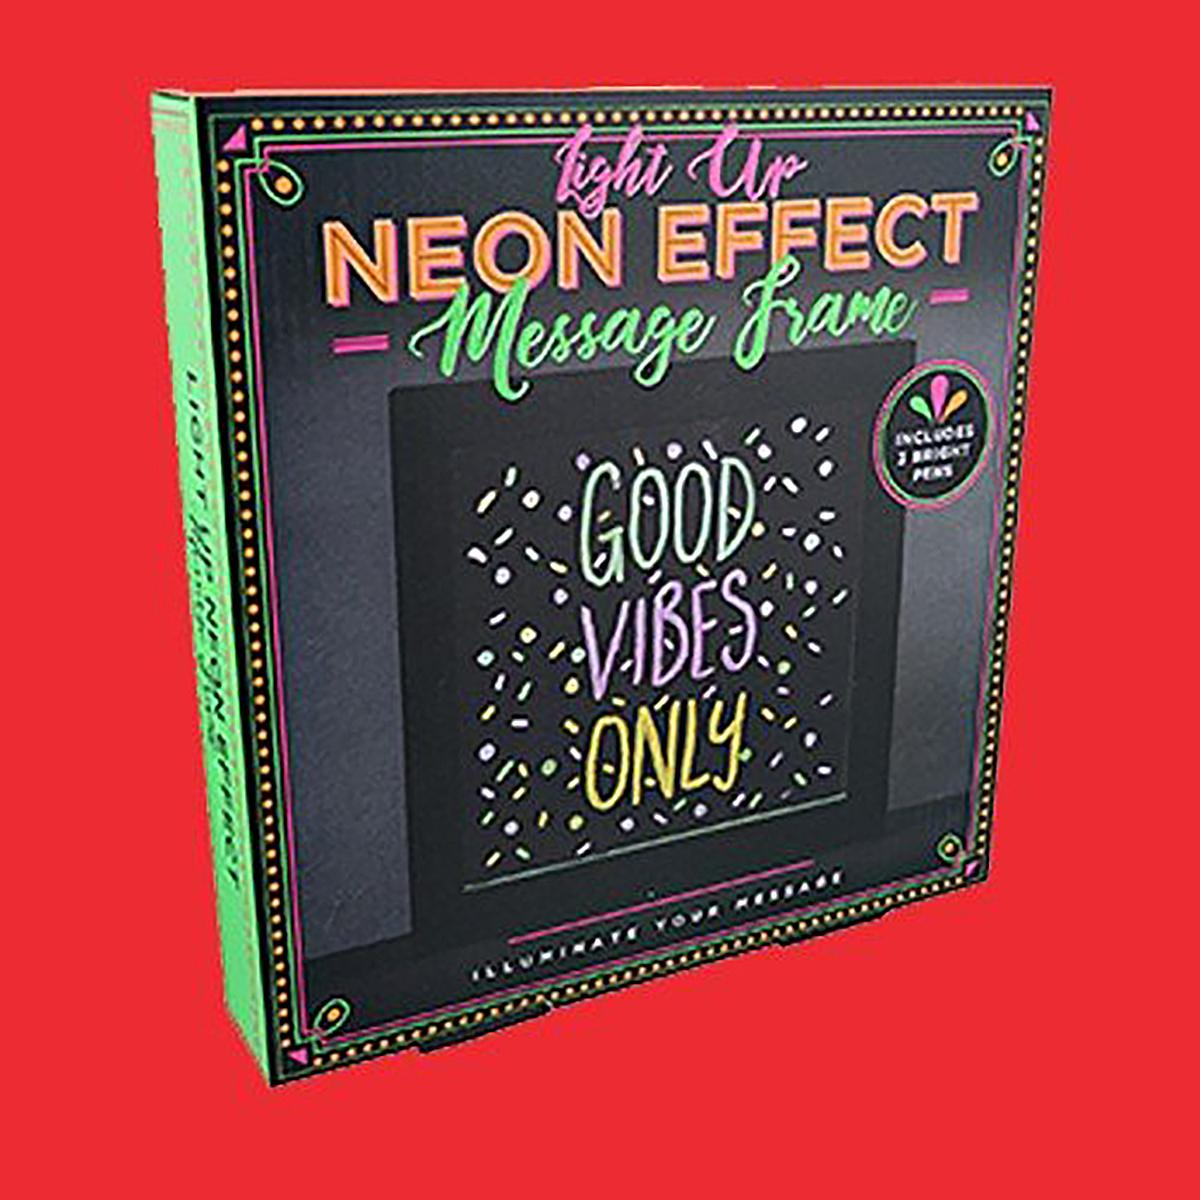 FIZZ CREATIONS Neon Effect Light Merchandise Frame Message Up